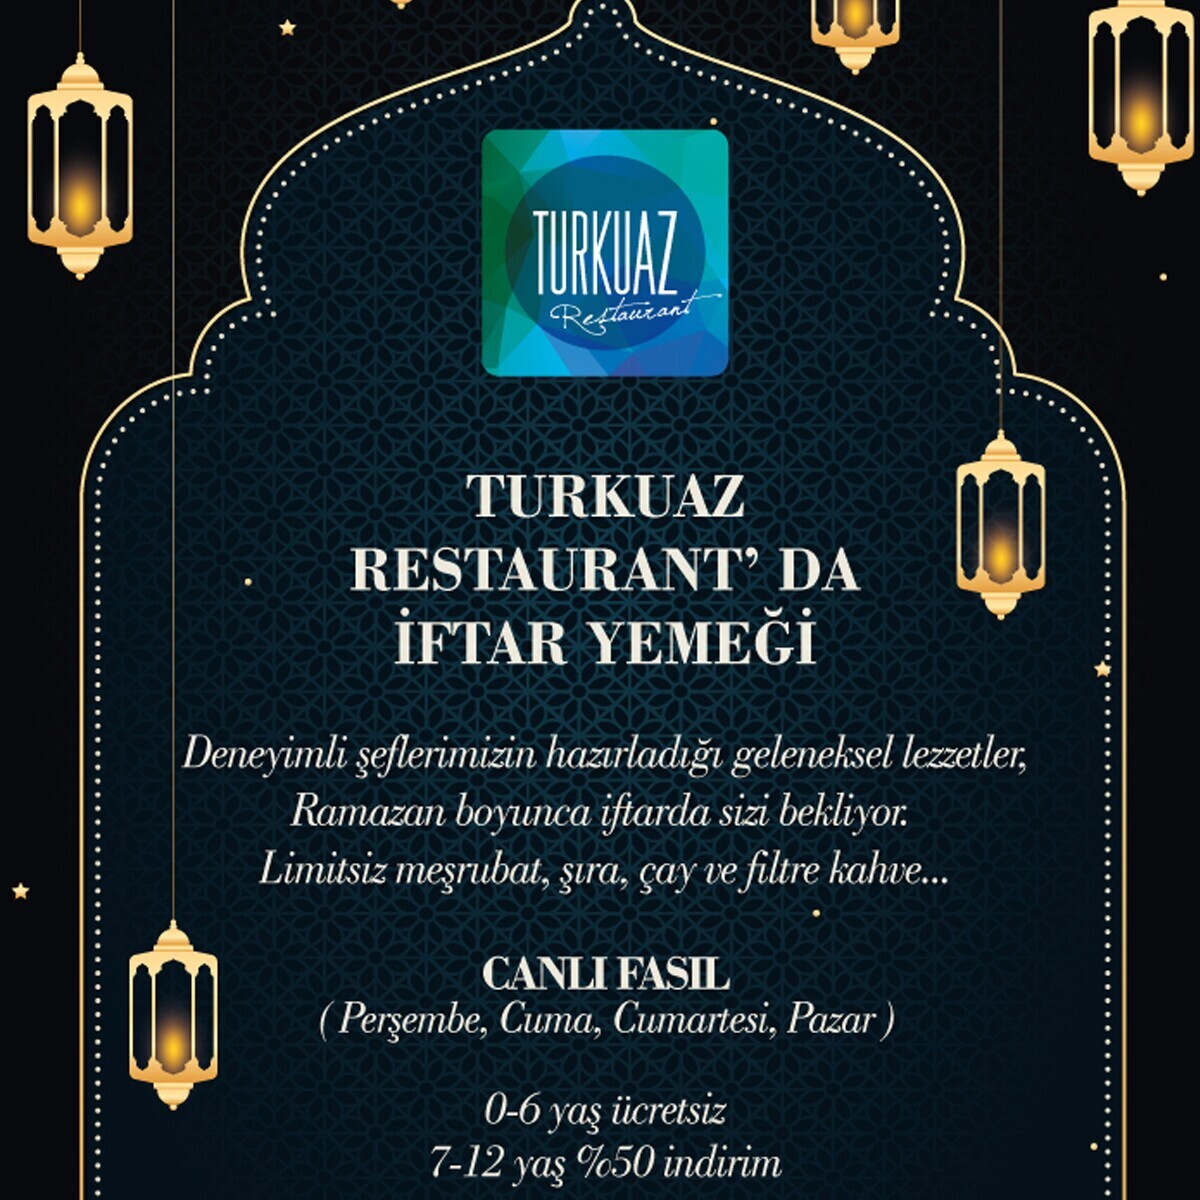 Kaya İstanbul Fair & Convention Hotel Turkuaz Restaurant'ta Canlı Fasıl Eşliğinde Set veya Açık Büfe İftar